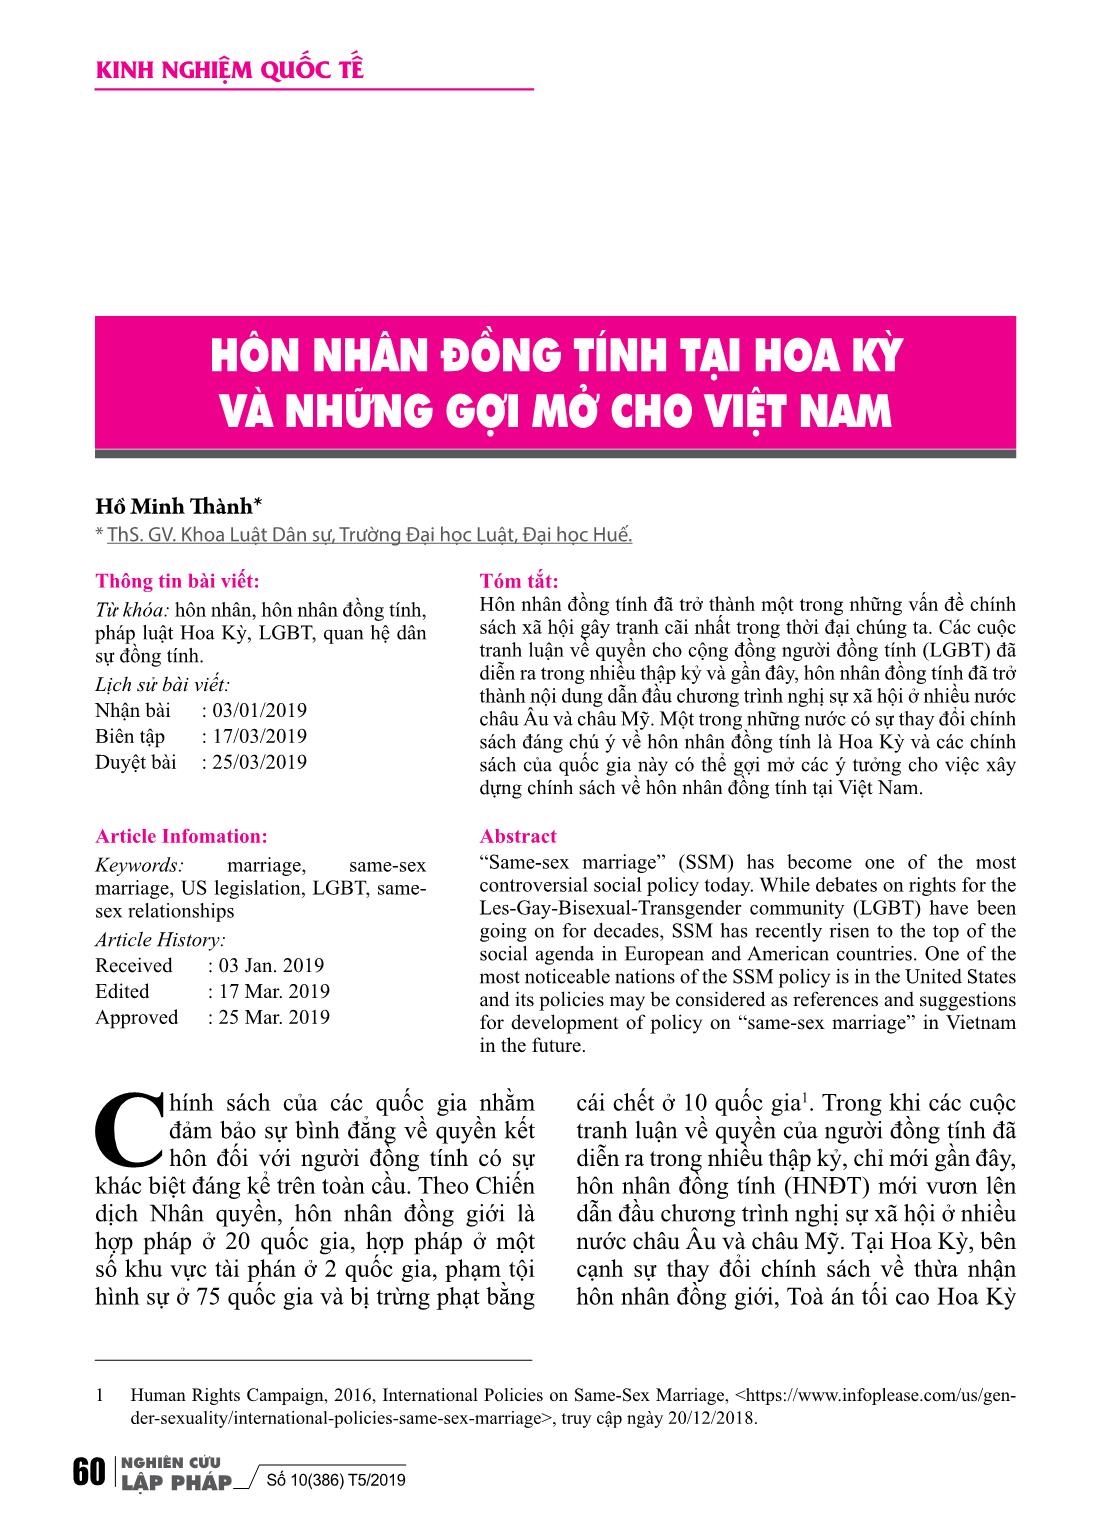 Hôn nhân đồng tính tại Hoa Kỳ và những gợi mở cho Việt Nam trang 1